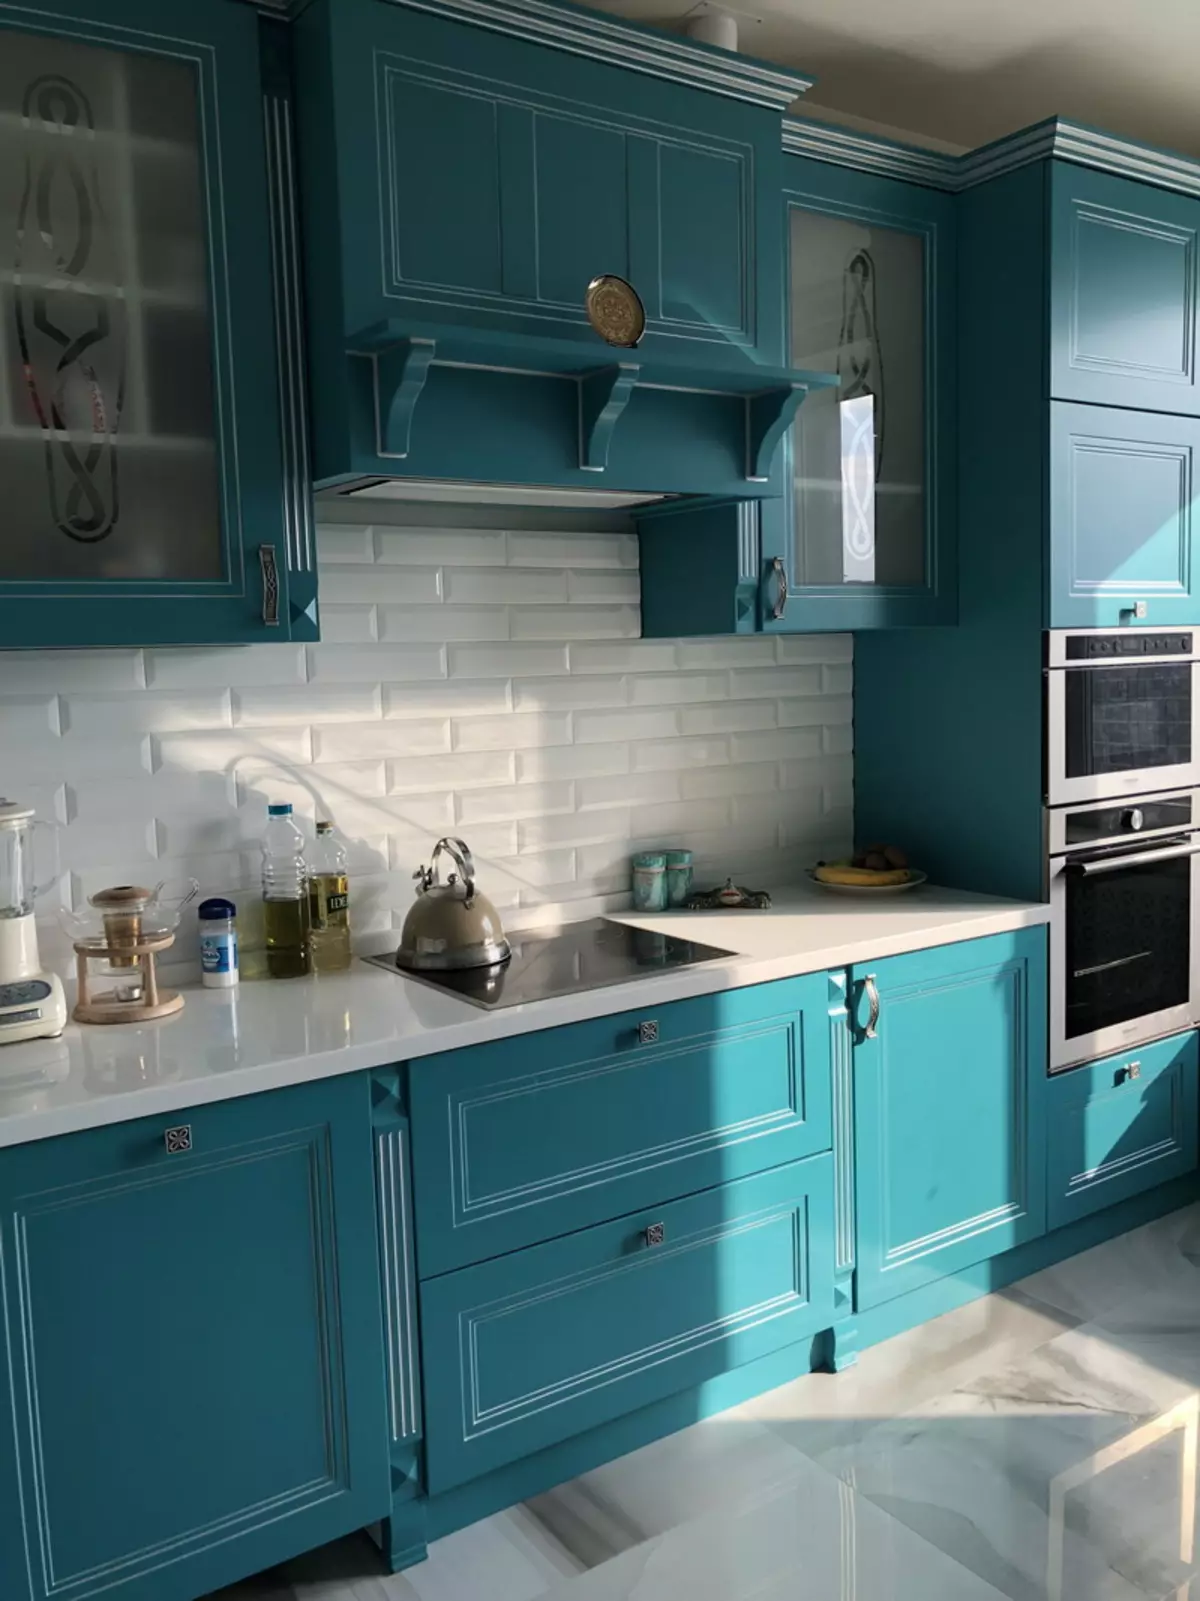 Bucătărie albastră (82 fotografii): Ce culori sunt combinate în interiorul unui set de bucătărie albastră? Design de bucătărie în tonuri albastre ușoare și întunecate 9555_14